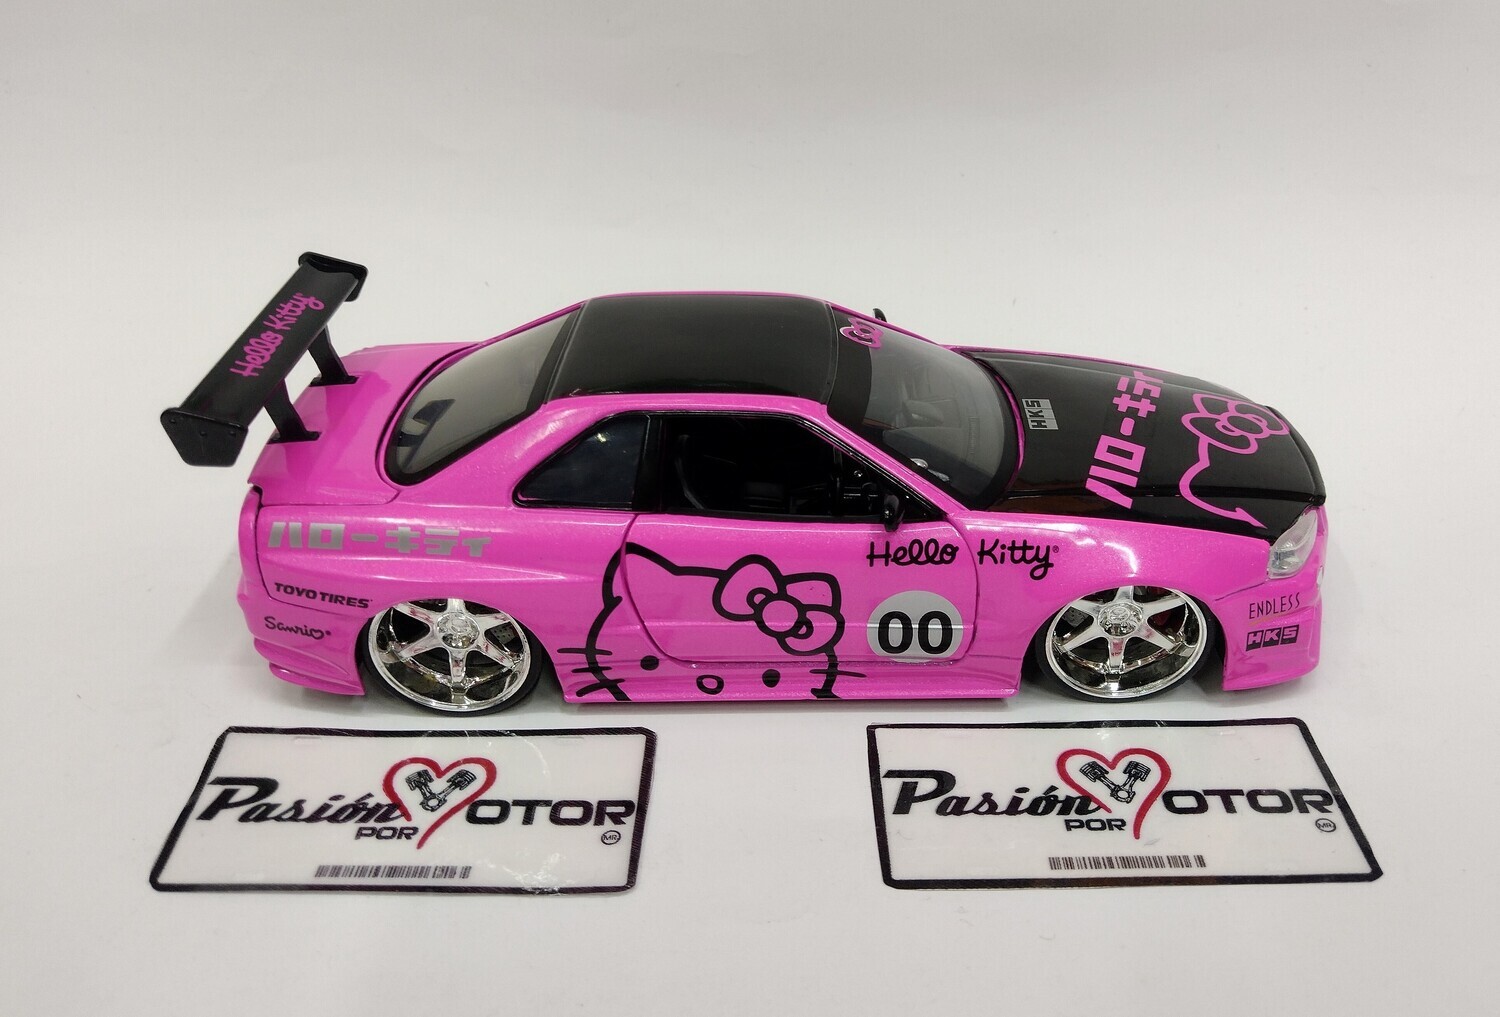 1:24 Nissan GT-R & Figura Hello Kitty Jada Toys